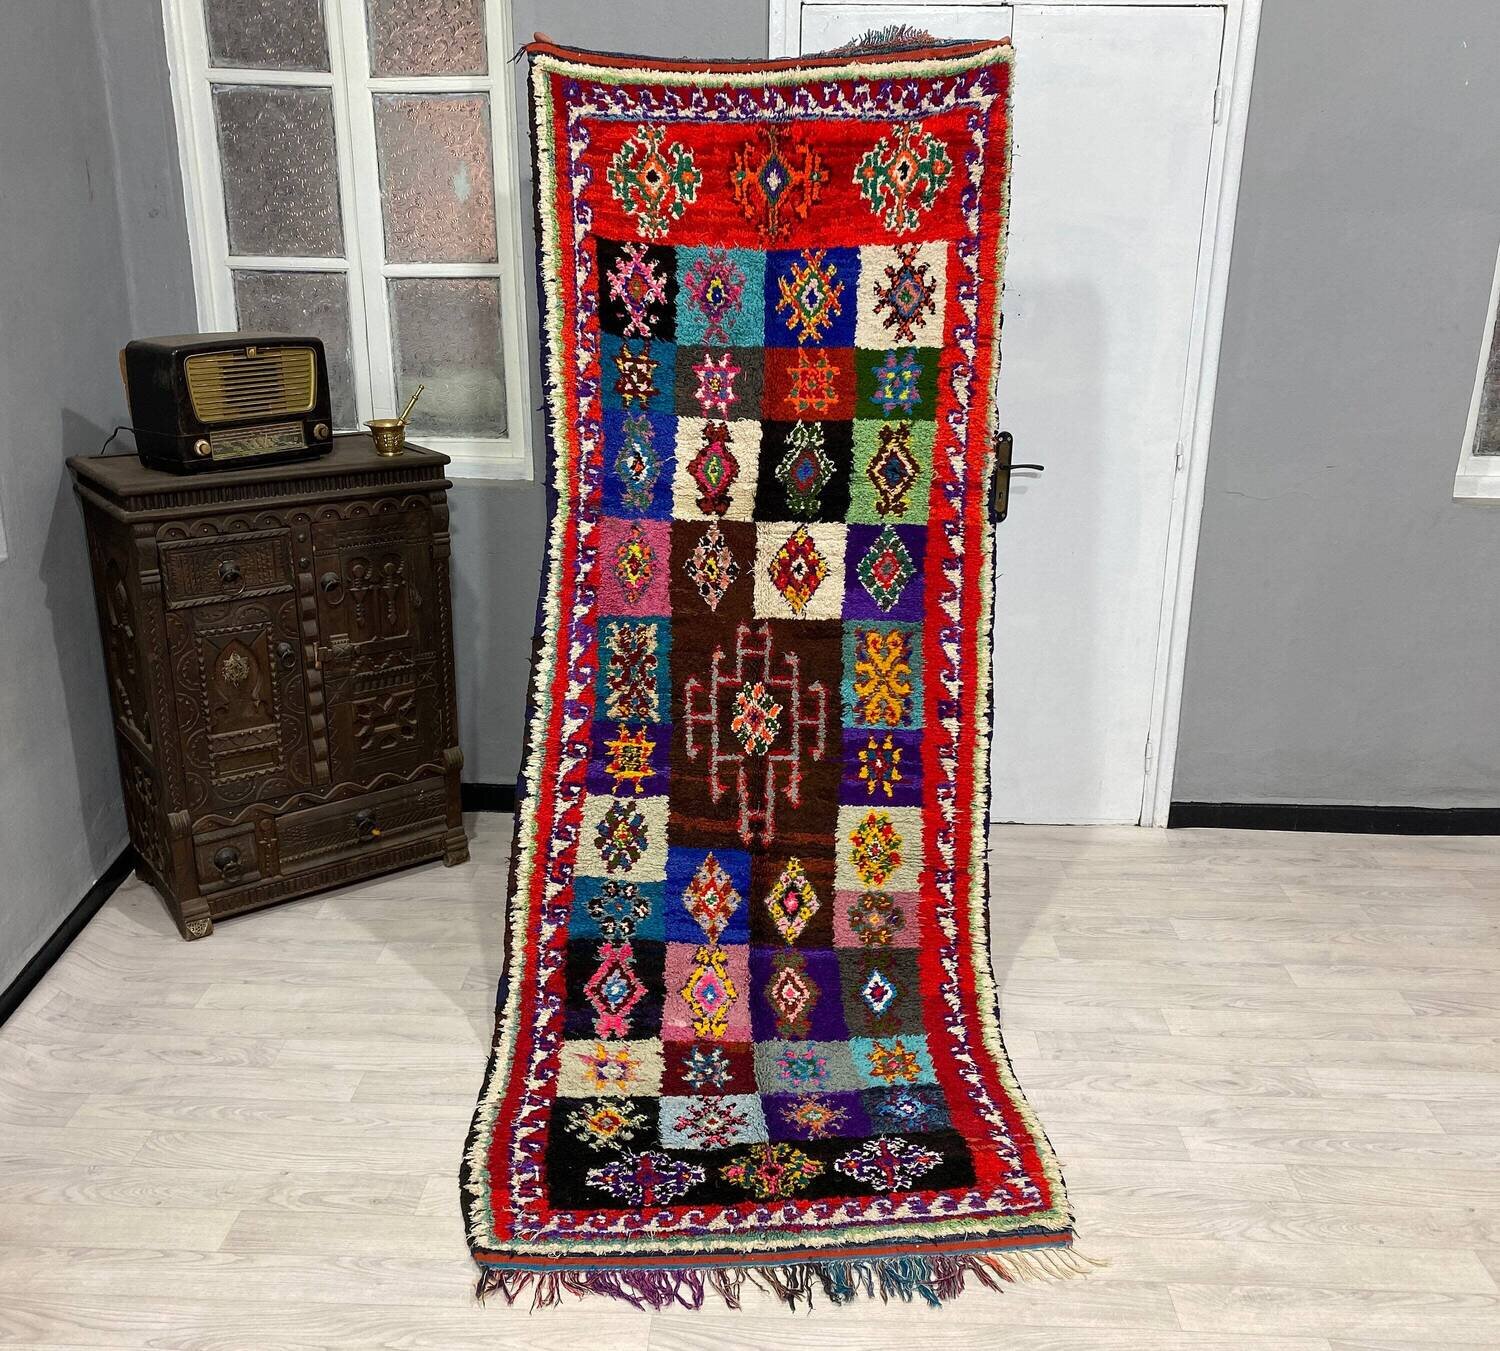 azilal rug berber rug home decor runner rug gifts for her kitchen rug moroccan rug afghan rug neutral rug handmade rug turkish rug